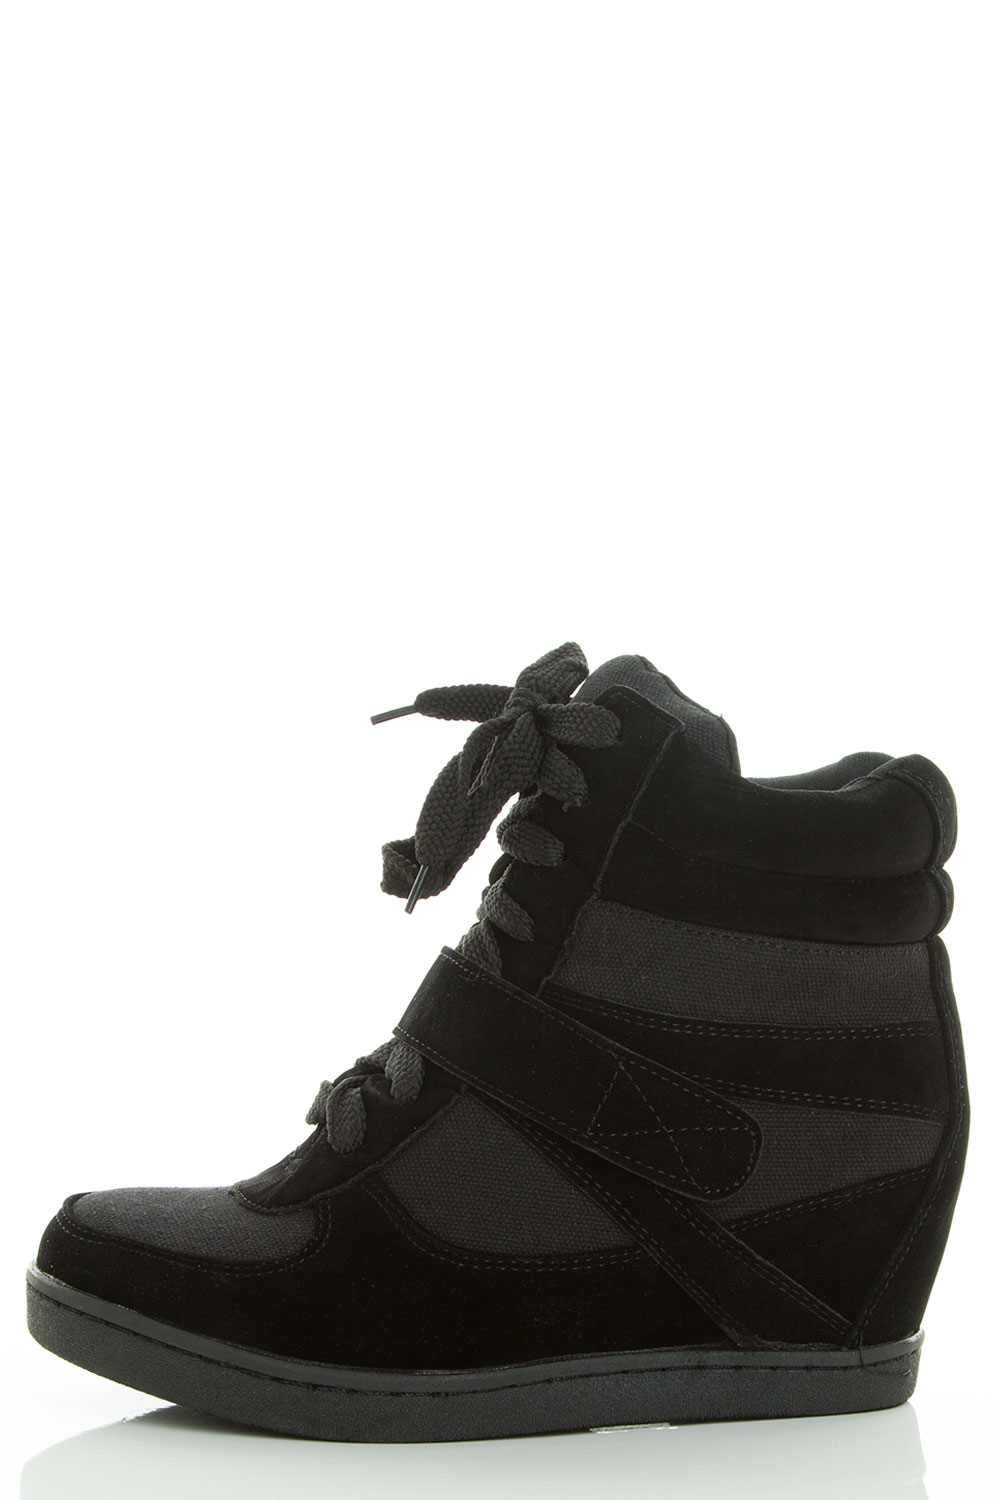 Men's High Tops Lace Up sneaker Dancing Casual Shoes 5CM Hidden Wedge Heels 